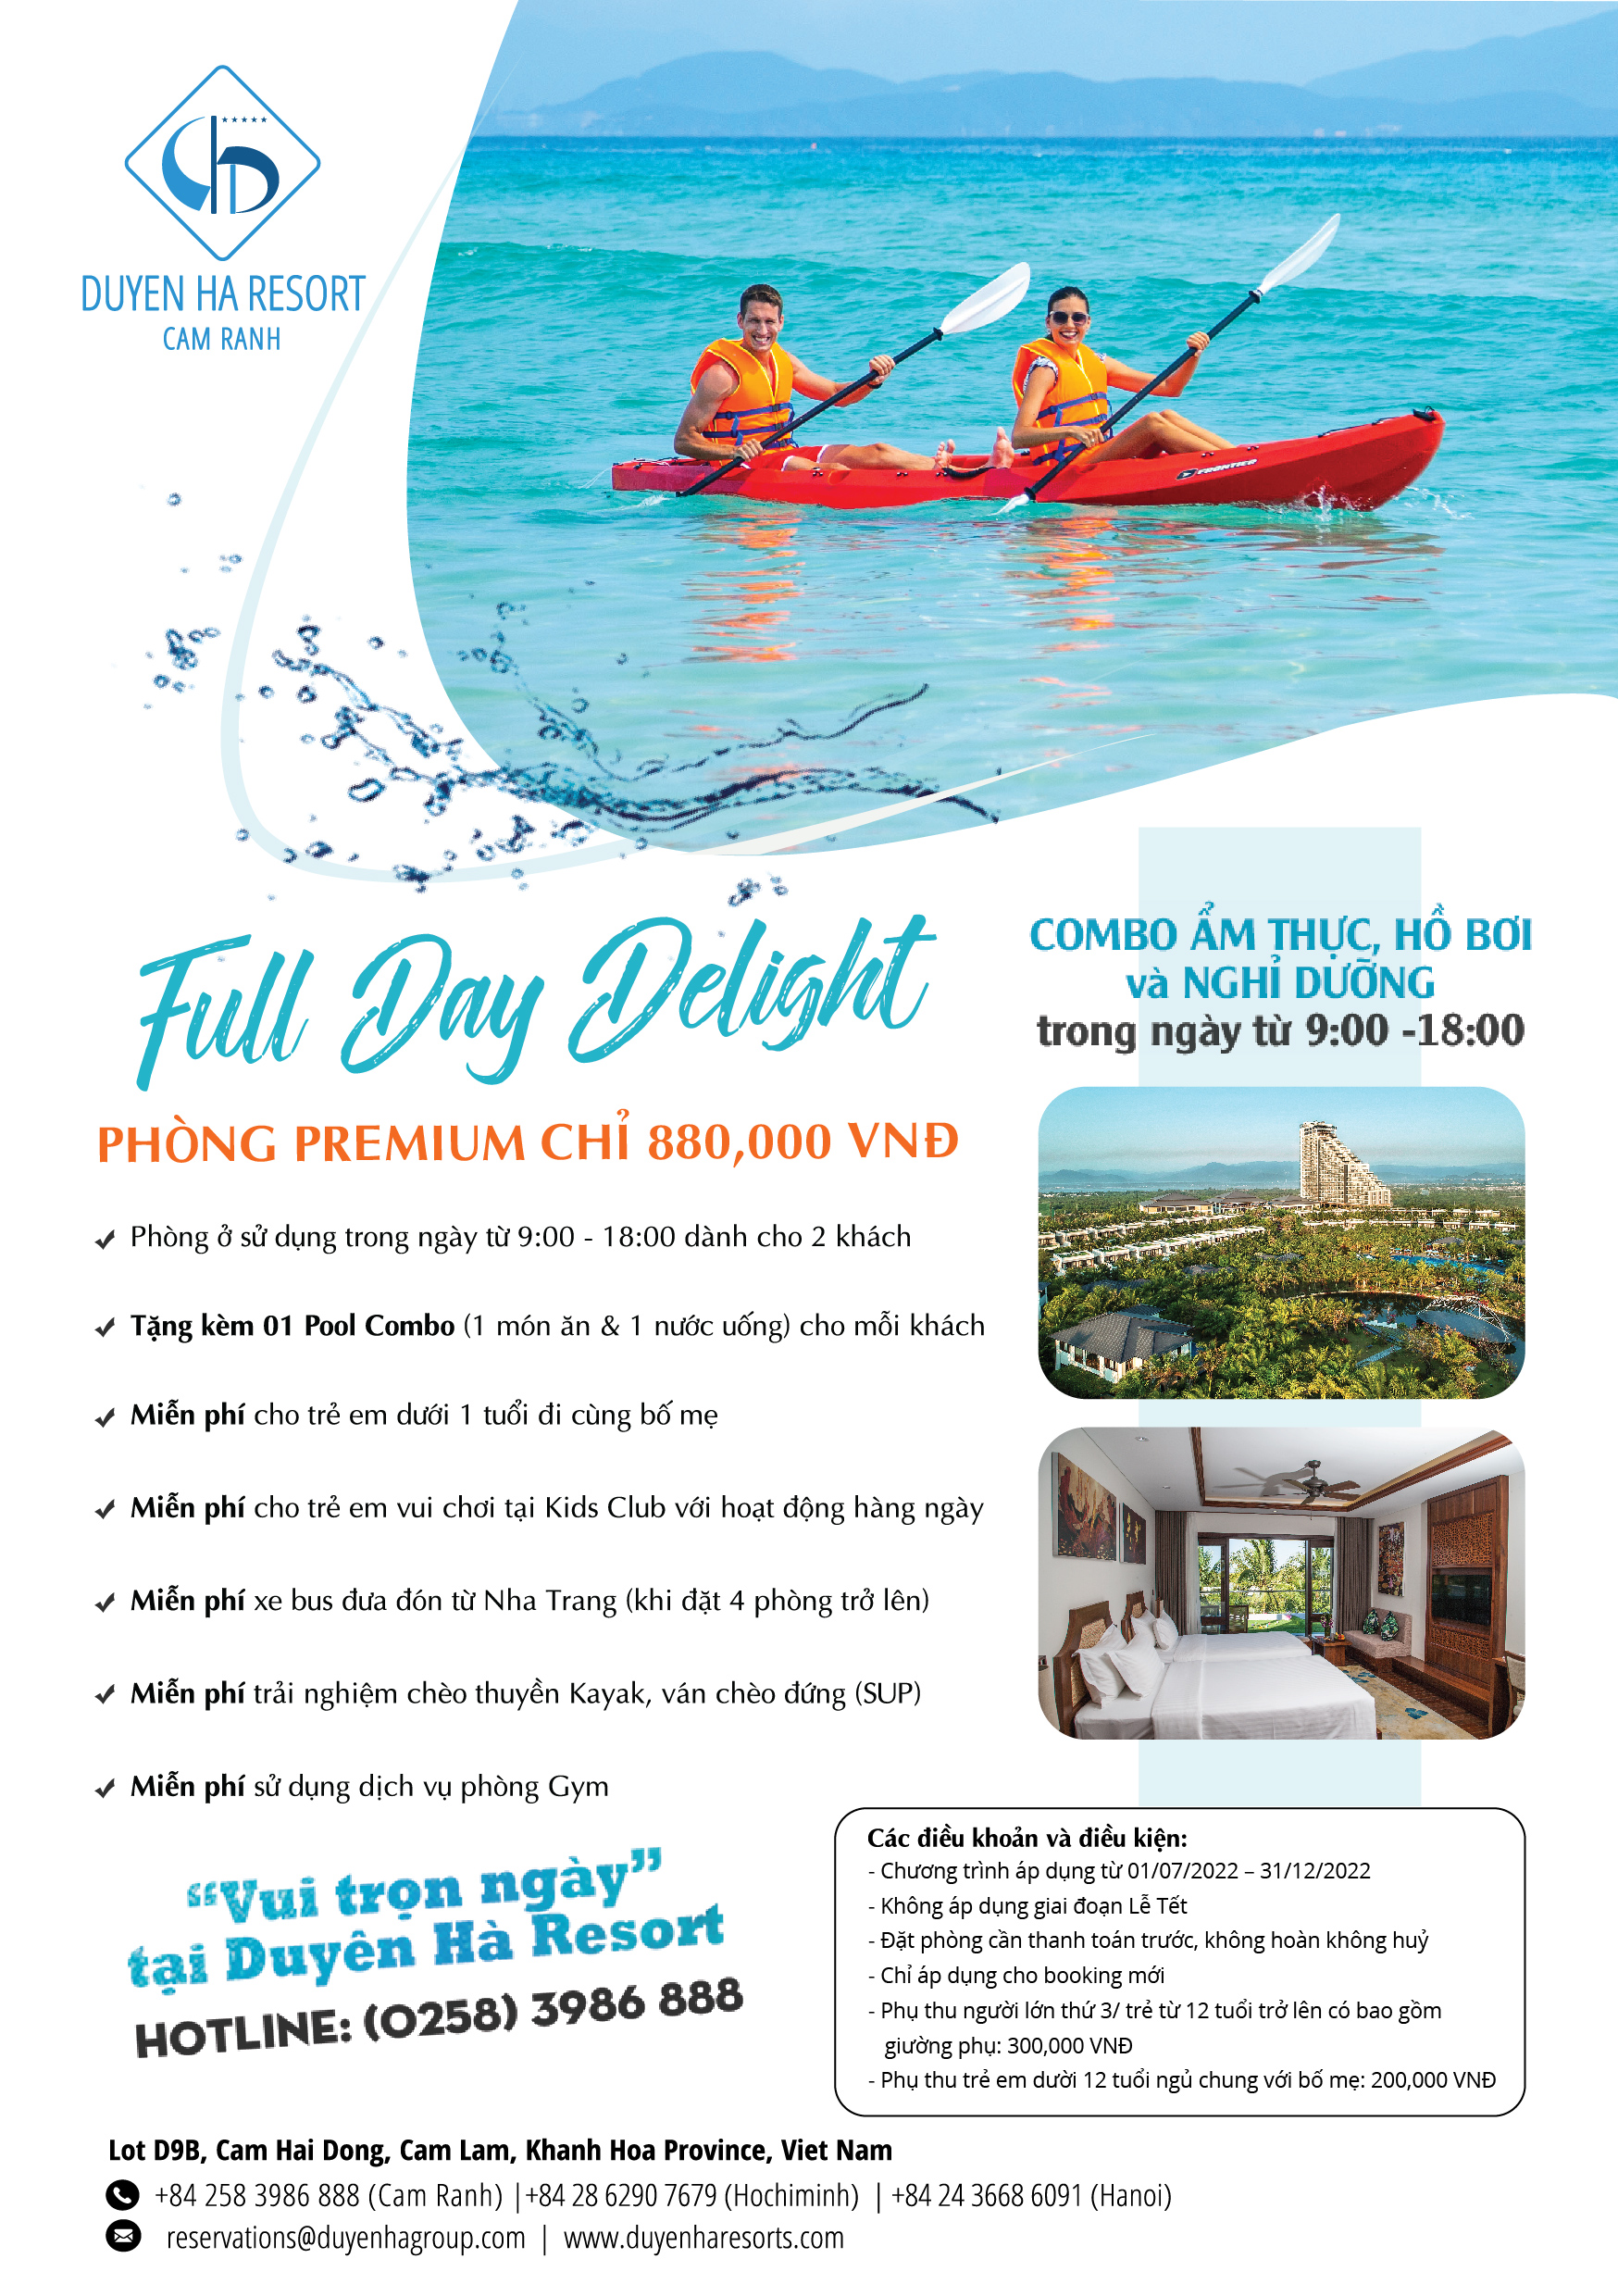 Full Day Delight - Duyen Ha Resort